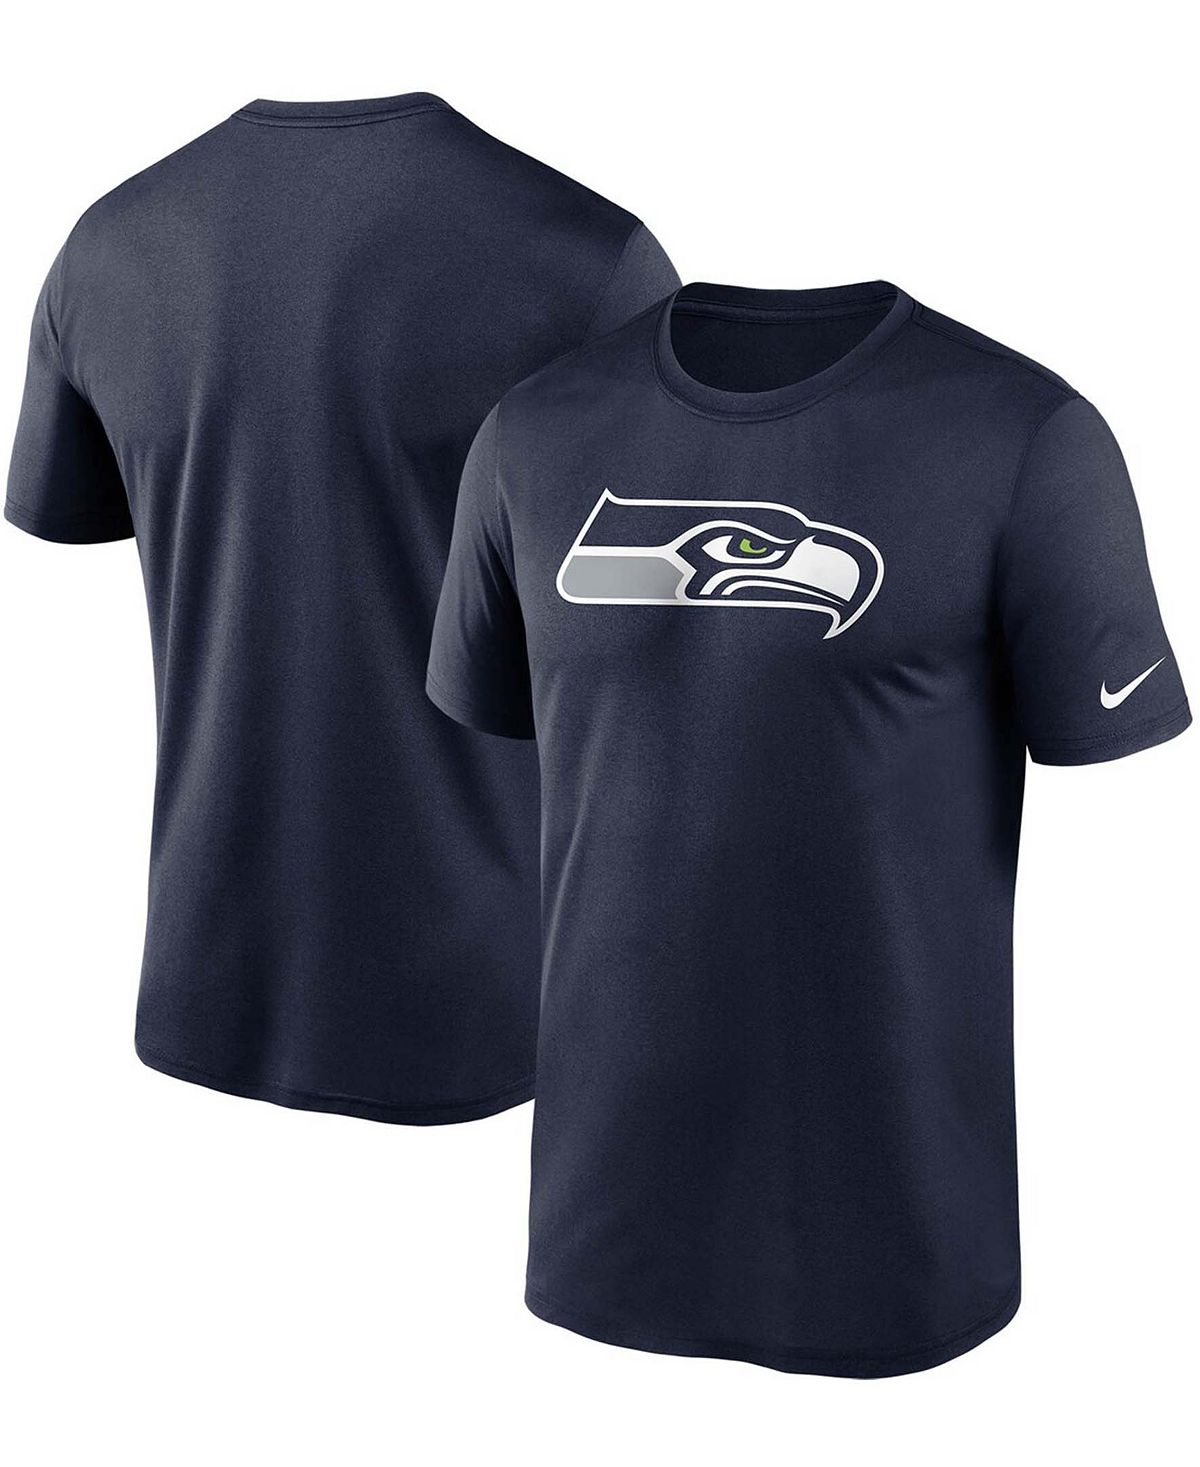 Мужская темно-синяя футболка с логотипом College Seattle Seahawks Essential Legend Performance Nike